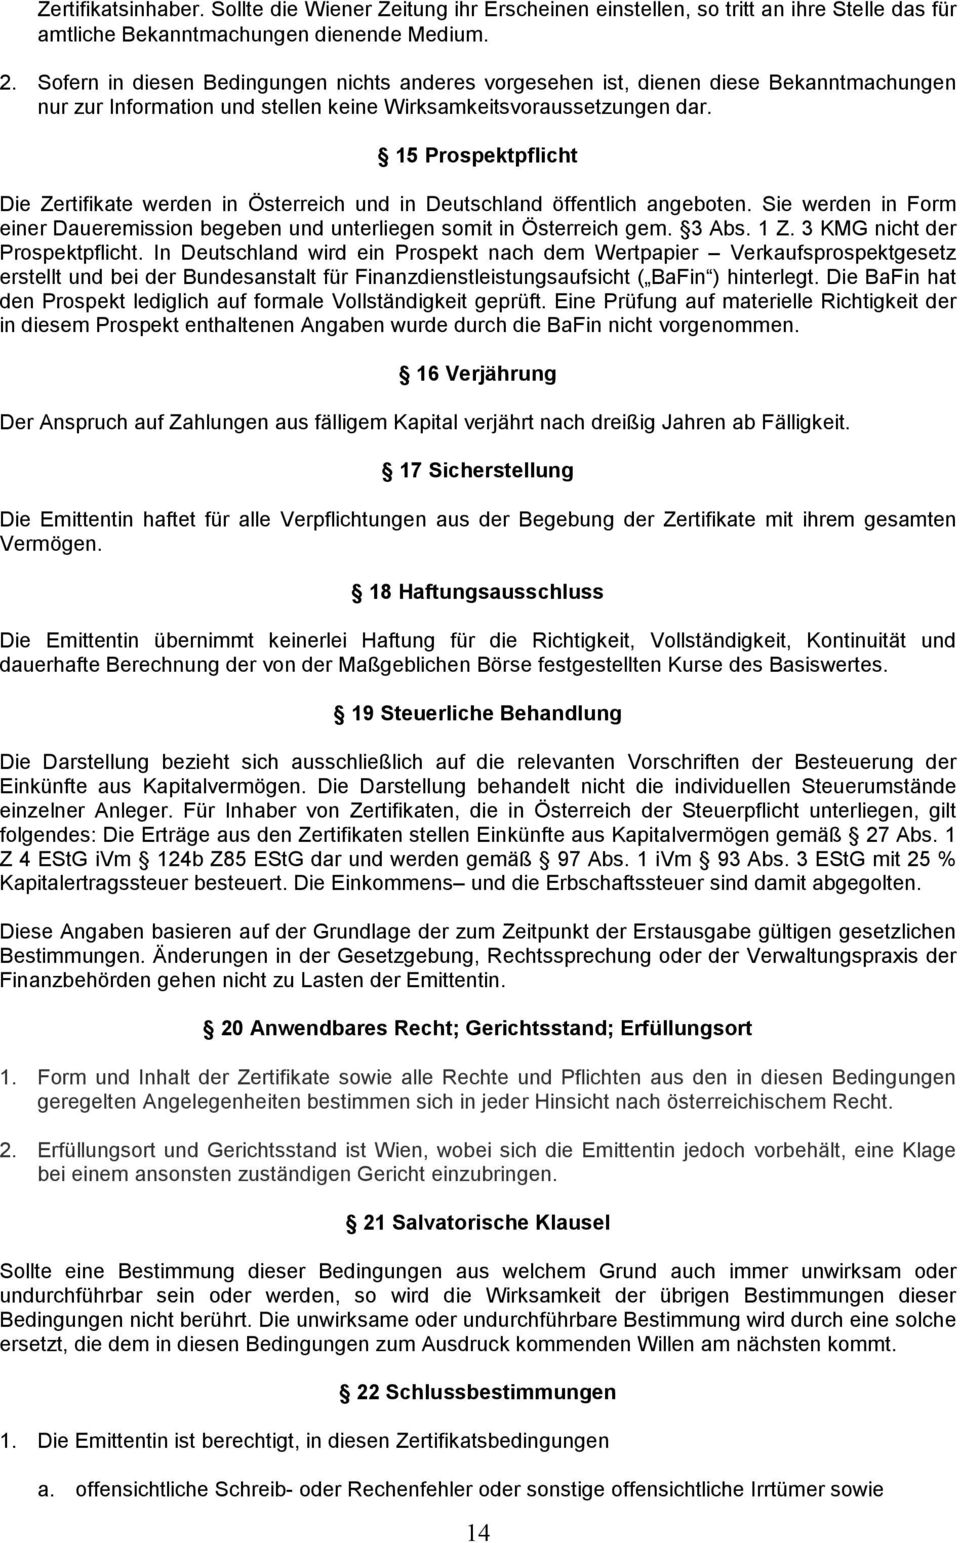 15 Prospektpflicht Die Zertifikate werden in Österreich und in Deutschland öffentlich angeboten. Sie werden in Form einer Daueremission begeben und unterliegen somit in Österreich gem. 3 Abs. 1 Z.